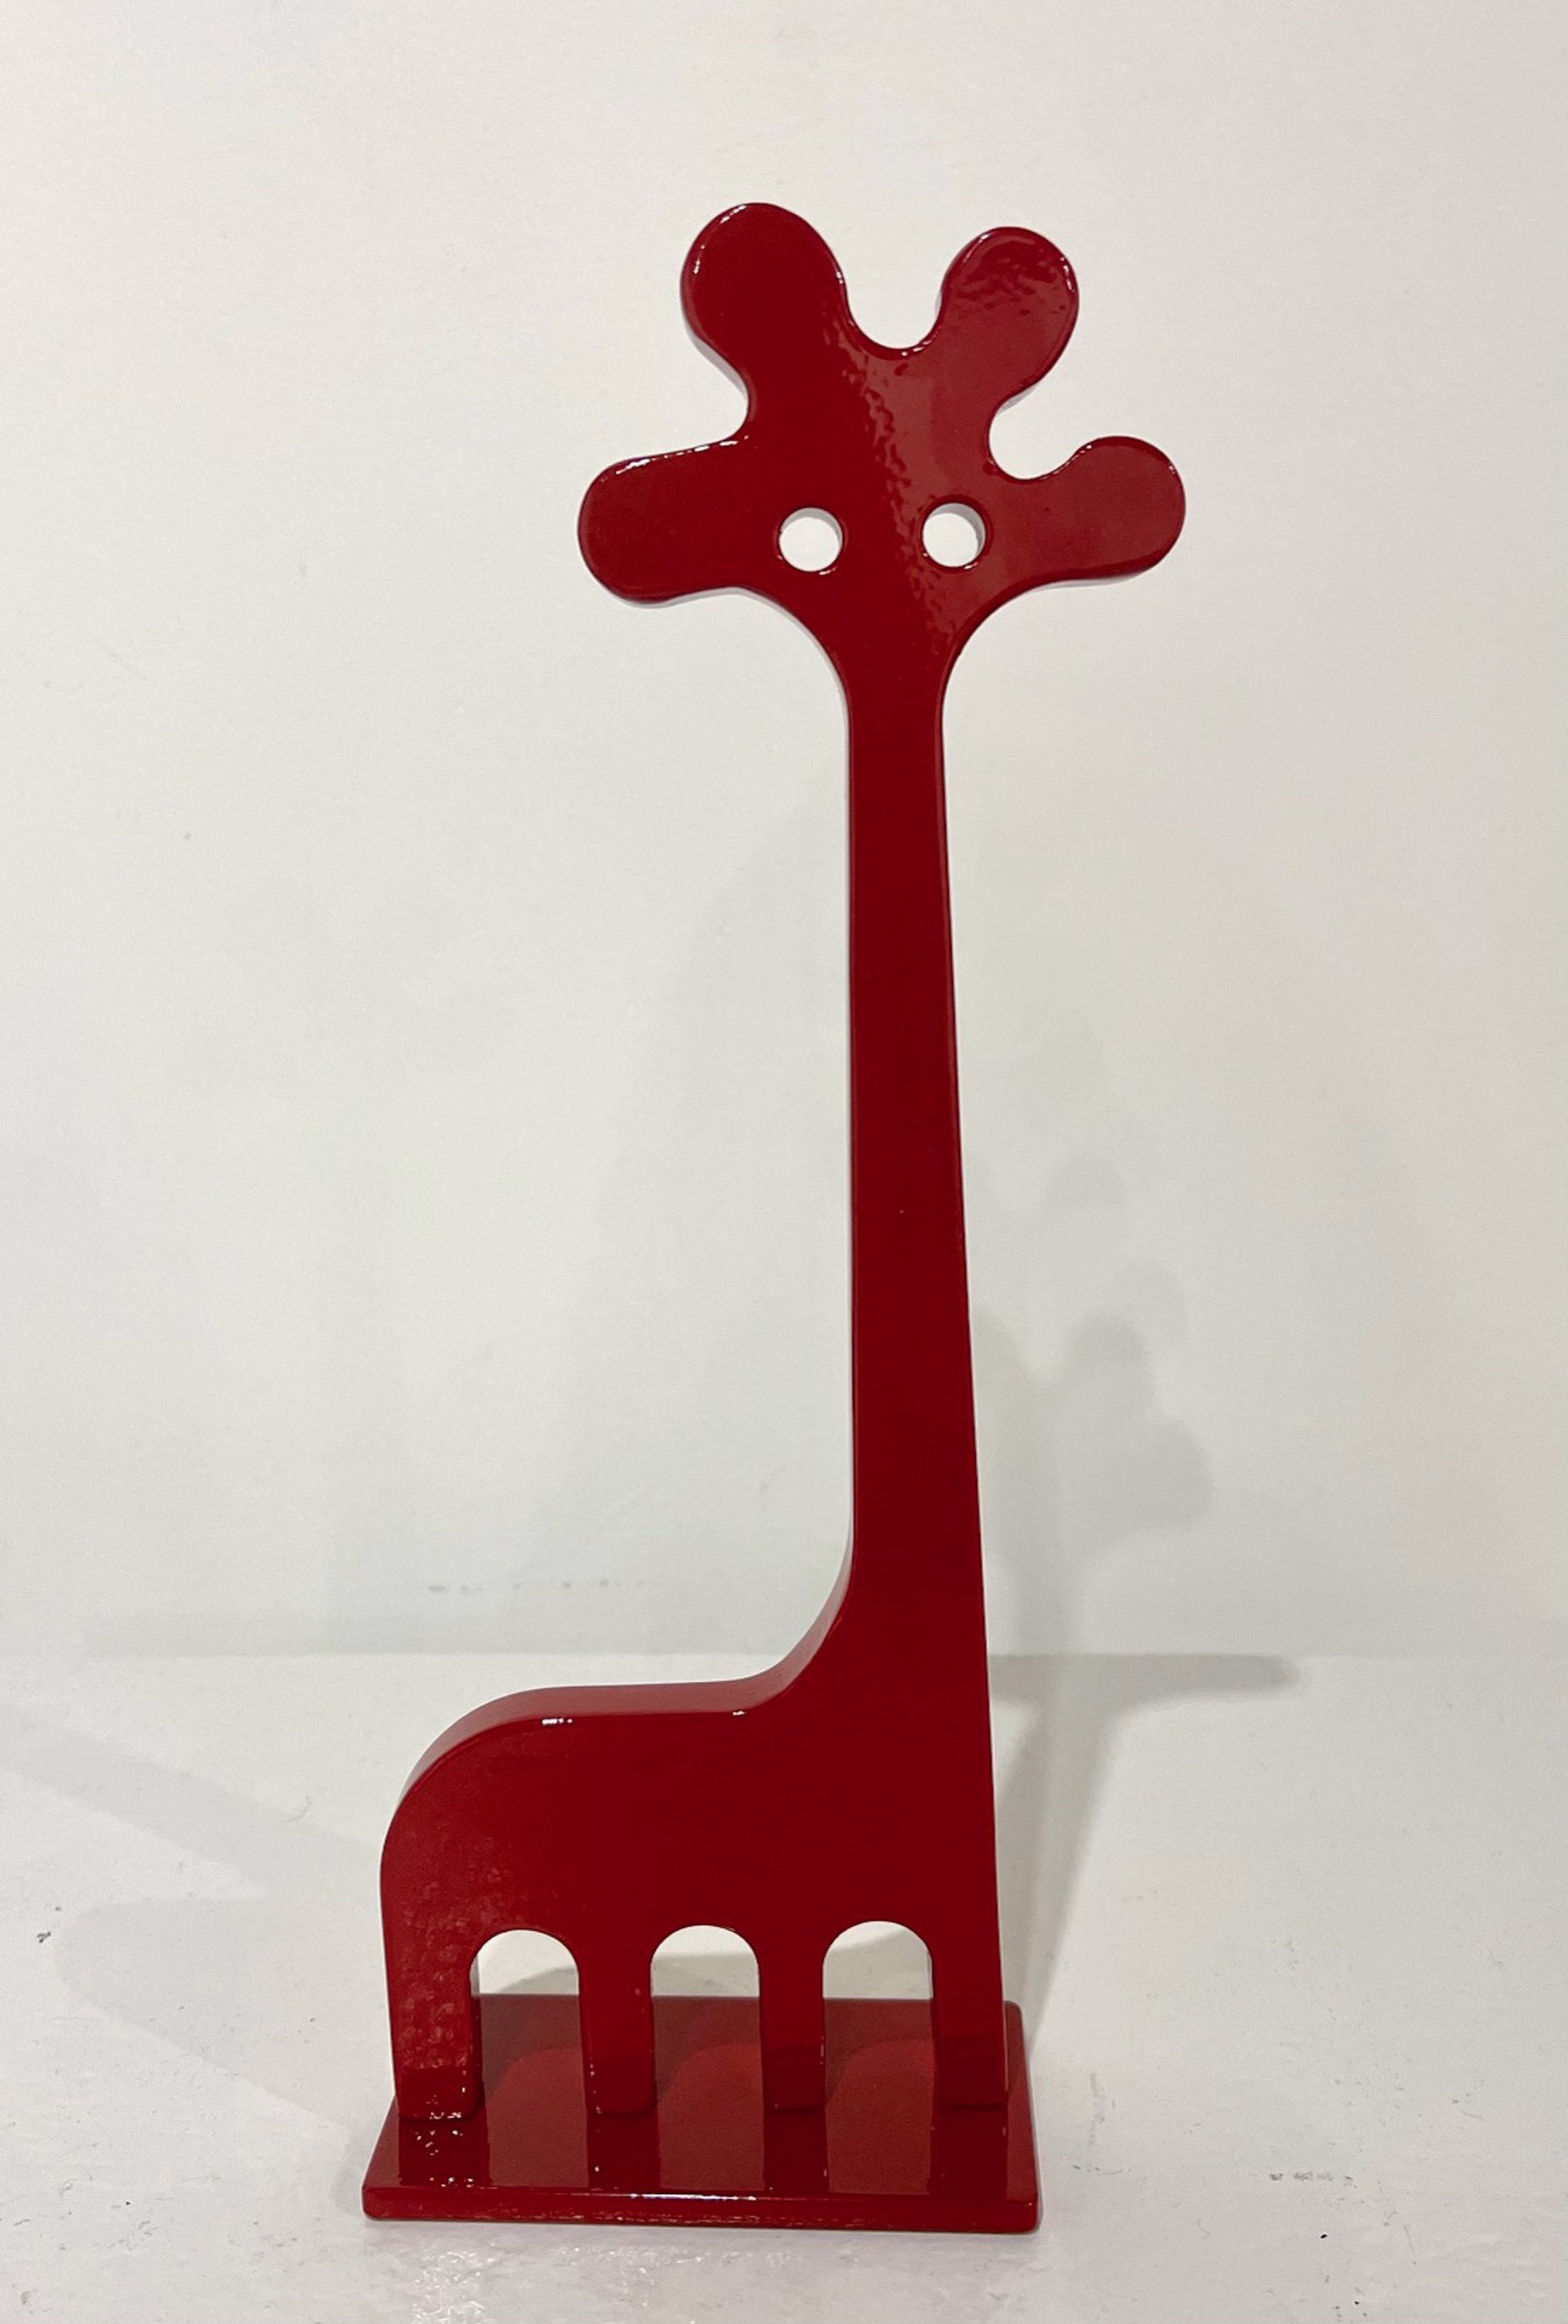 Red Giraffe by Jeffie Brewer